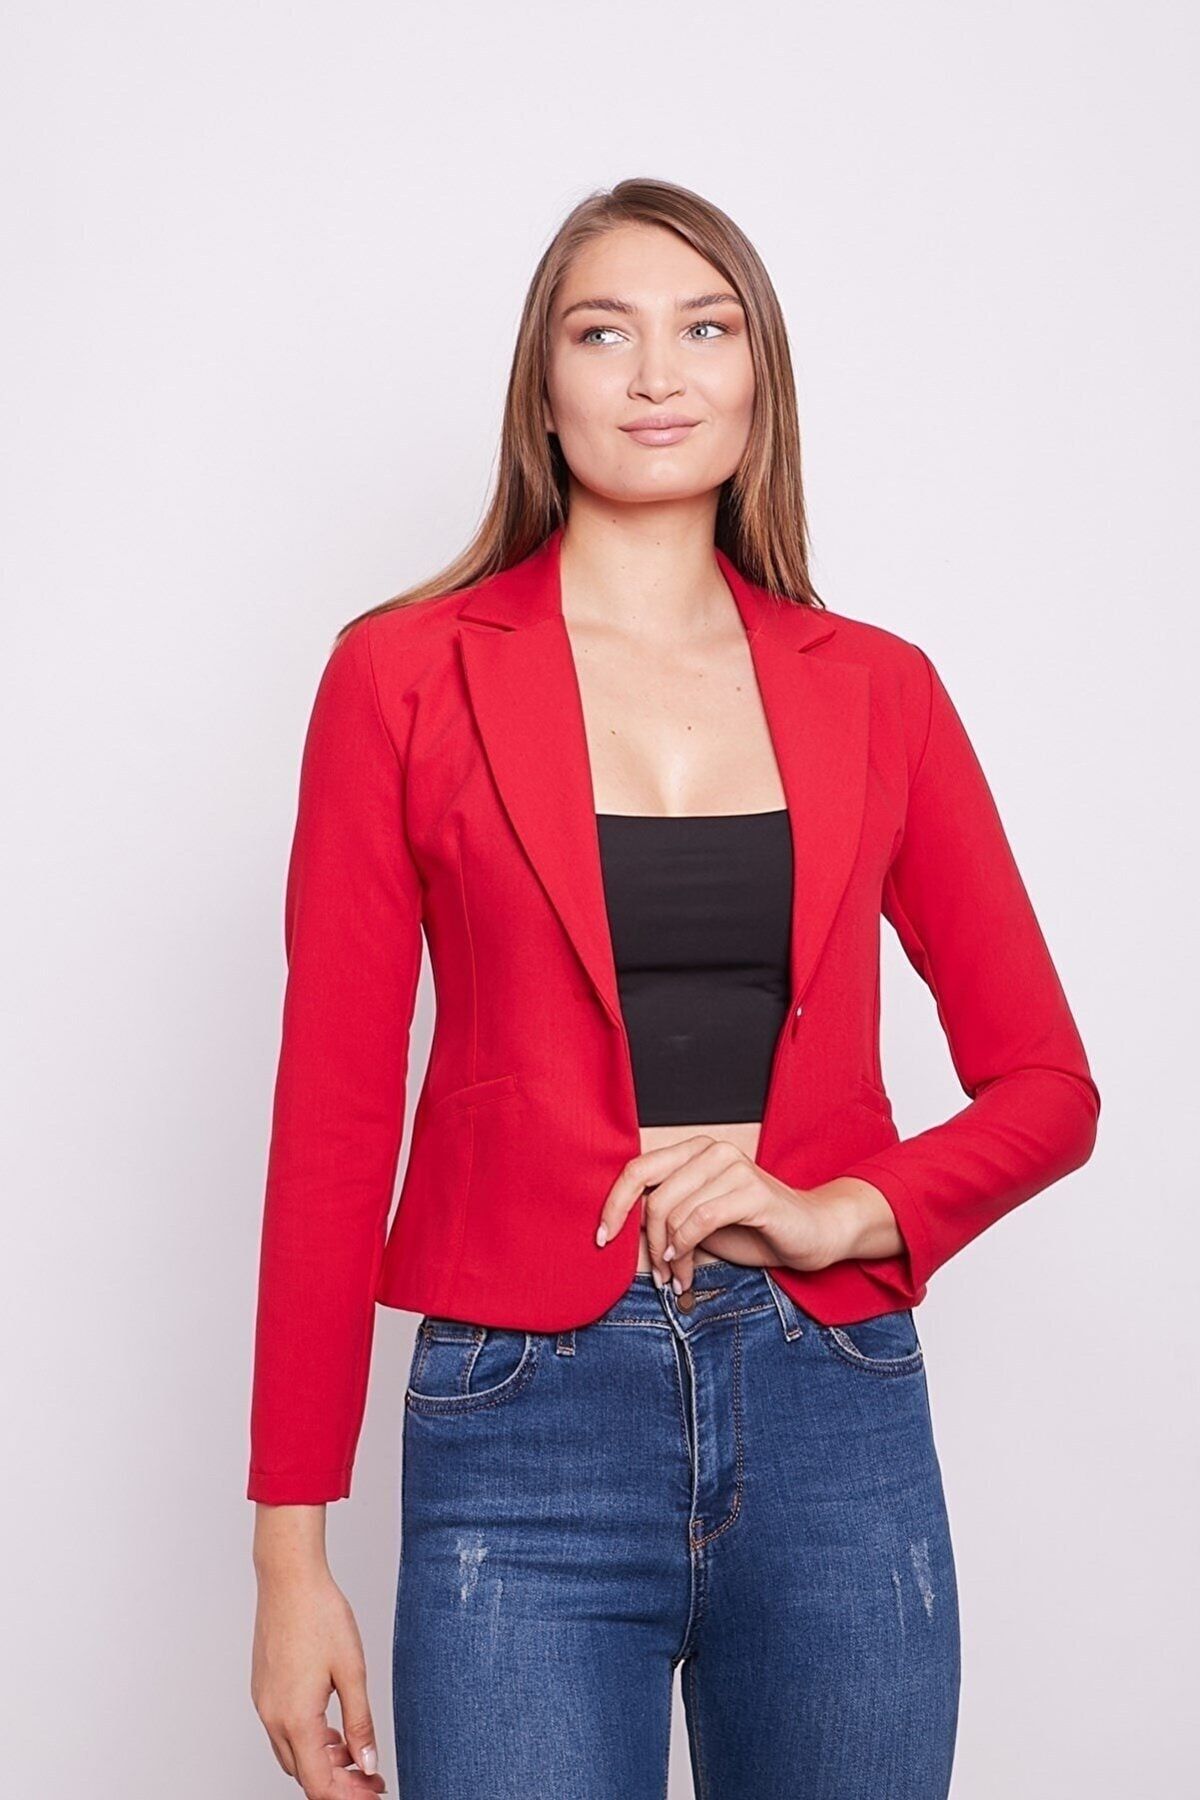 Up Shop Kırmızı Renk Yakalı Flato Cepli Pamuklu Kumaş Kısa Blazer Ceket